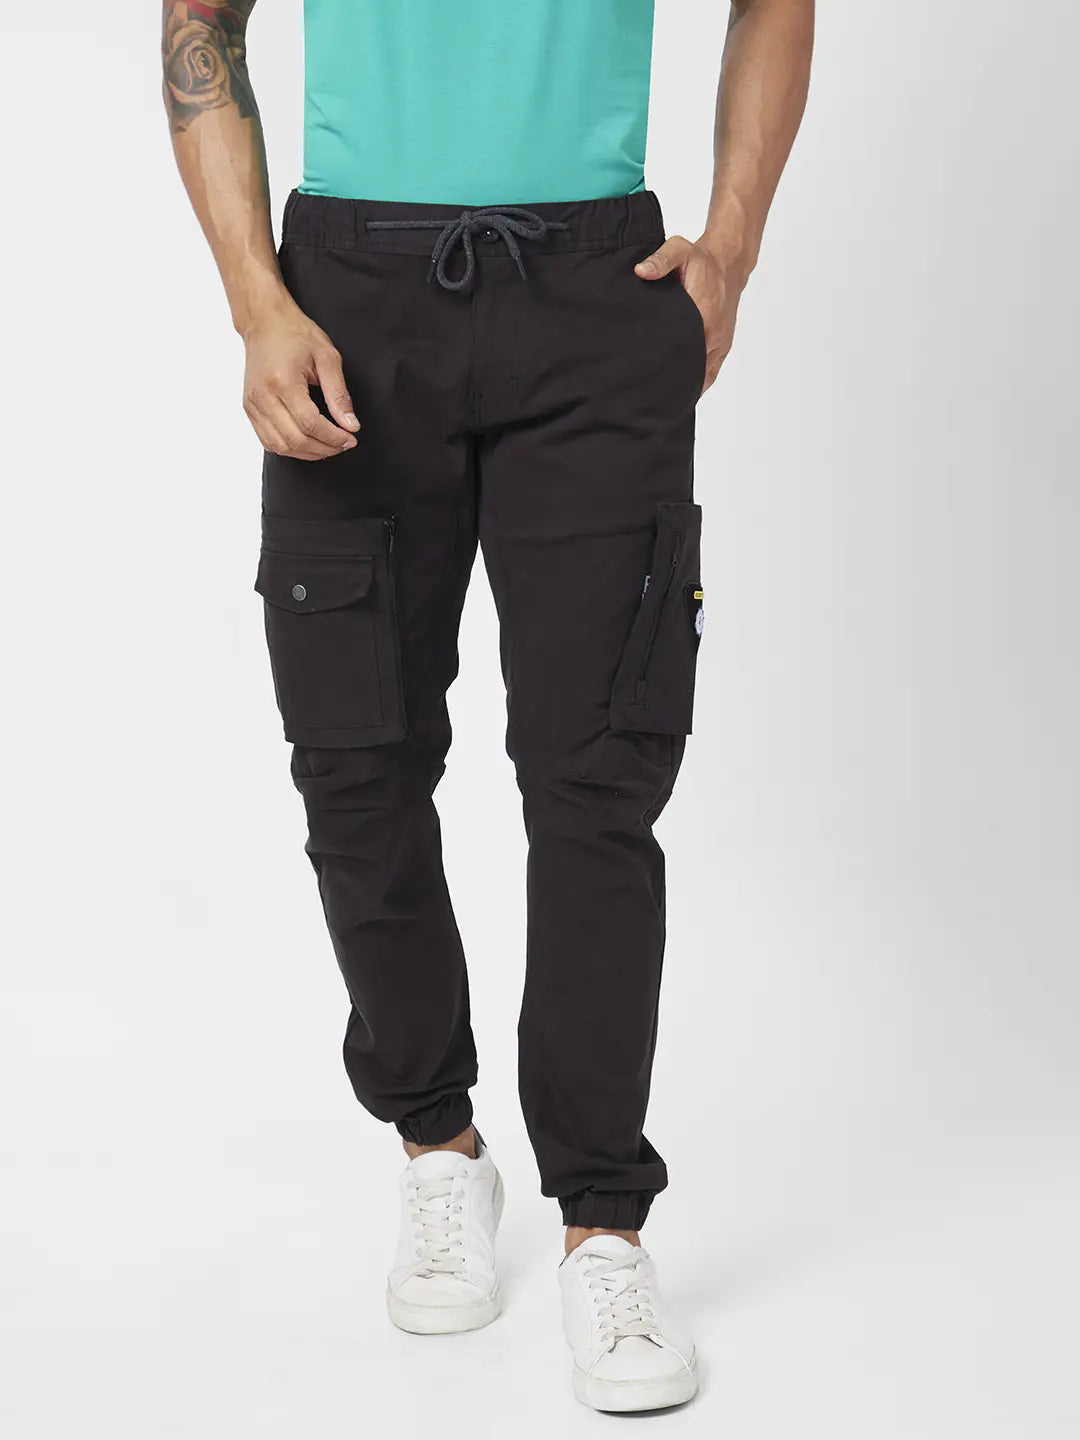 Buy Beige Trousers  Pants for Men by SPYKAR Online  Ajiocom